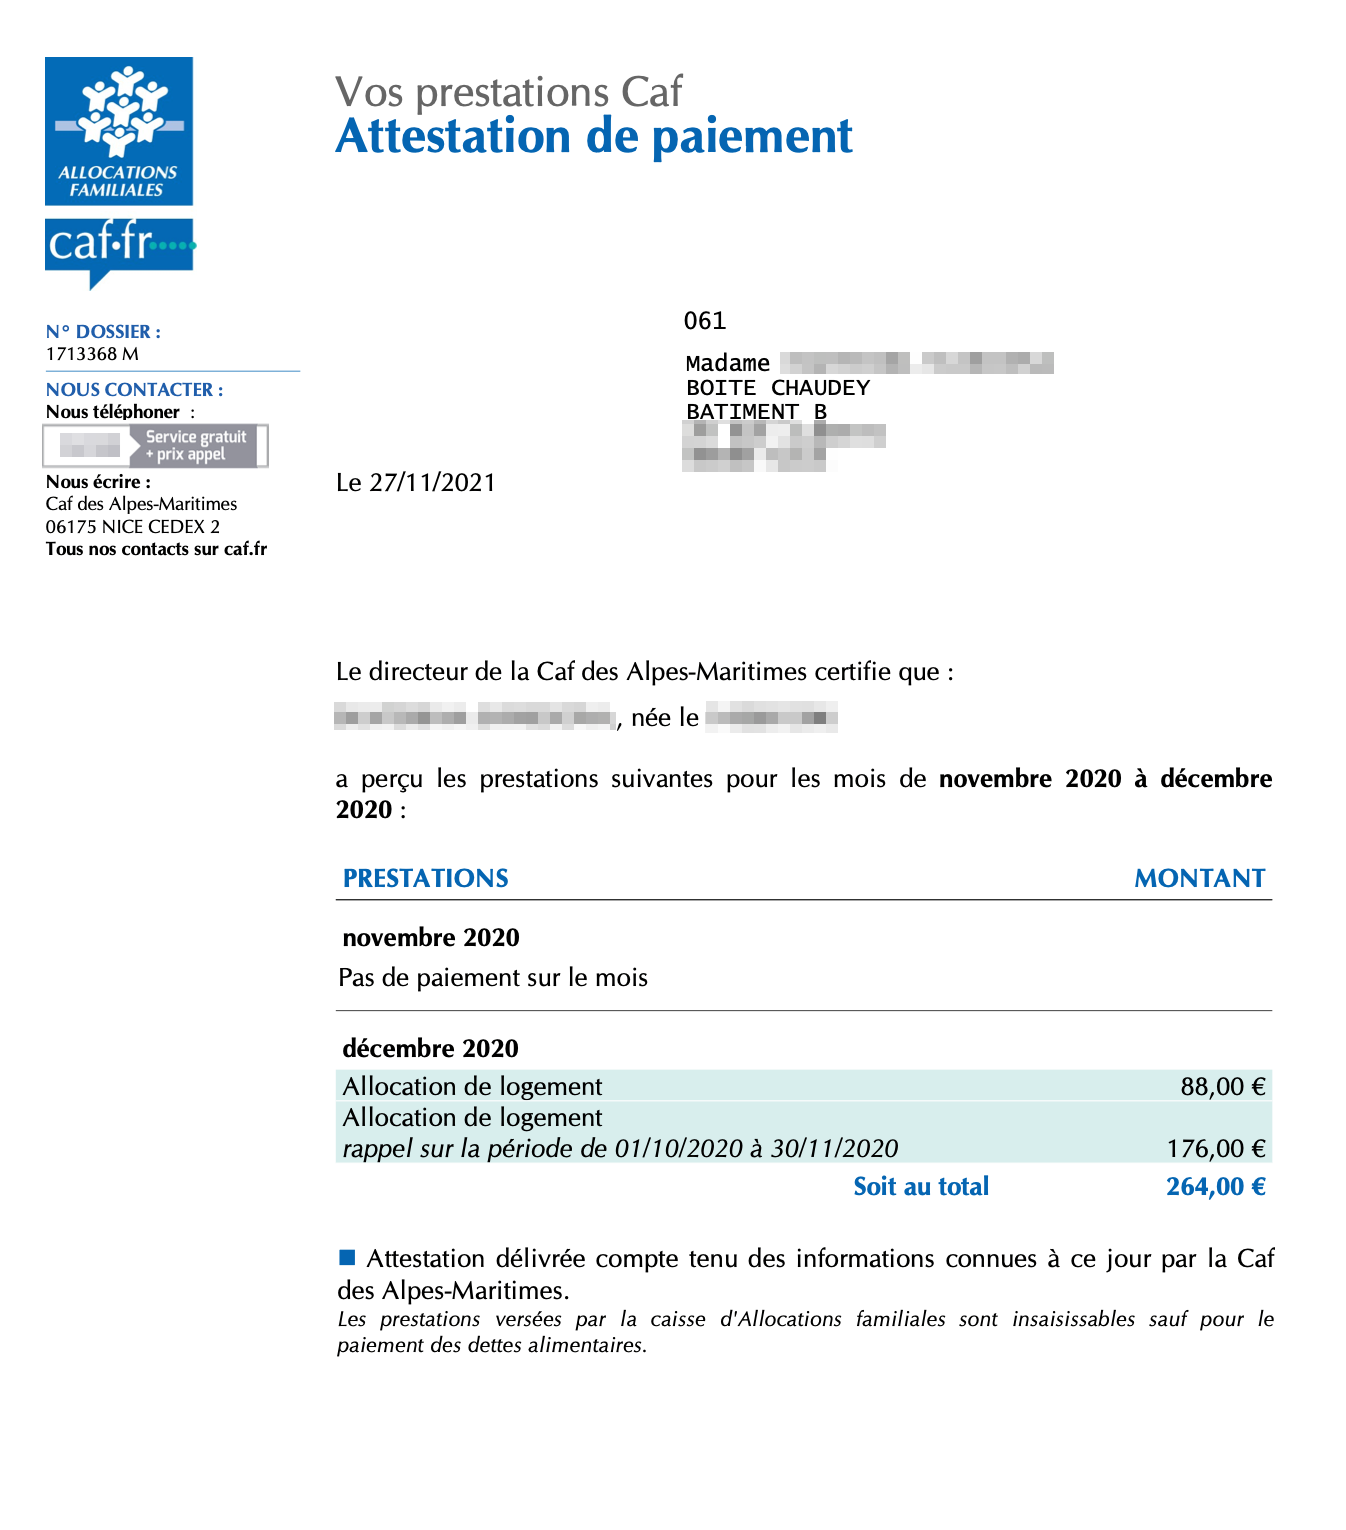 Выписка из моего личного кабинета CAF: в ноябре я не получала никаких выплат, за декабрь выплата составила 88 €, за период с 1 октября по 30 ноября — 176 €